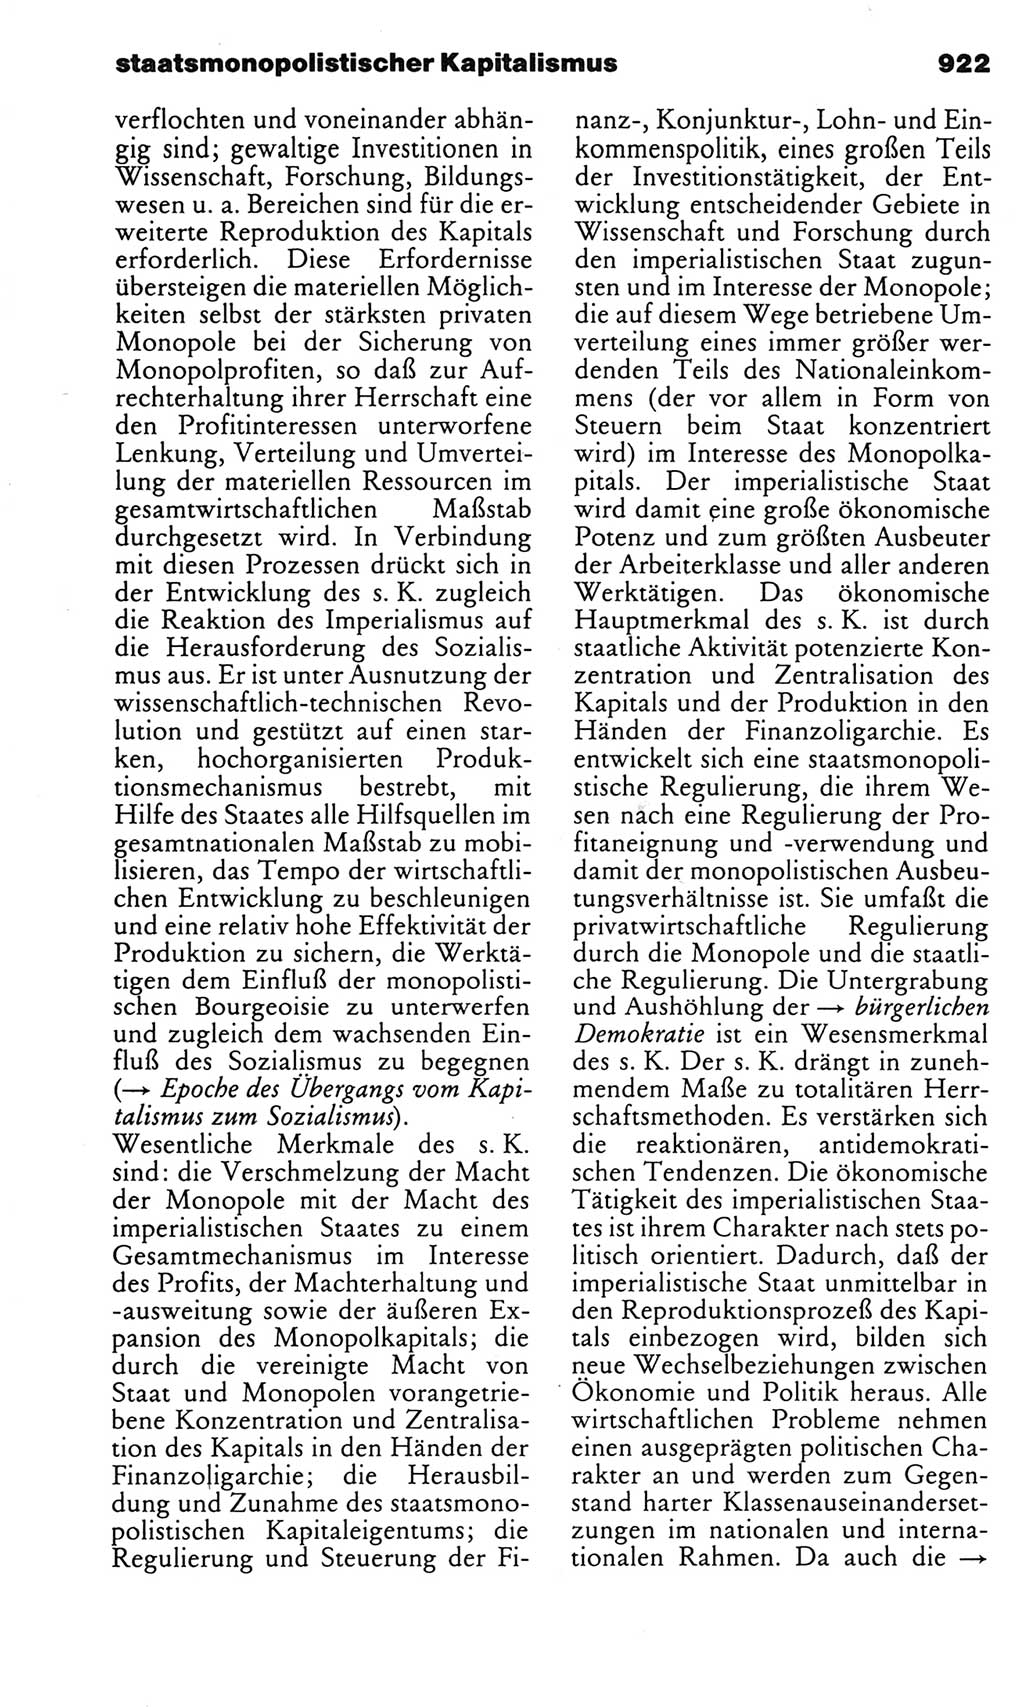 Kleines politisches Wörterbuch [Deutsche Demokratische Republik (DDR)] 1983, Seite 922 (Kl. pol. Wb. DDR 1983, S. 922)